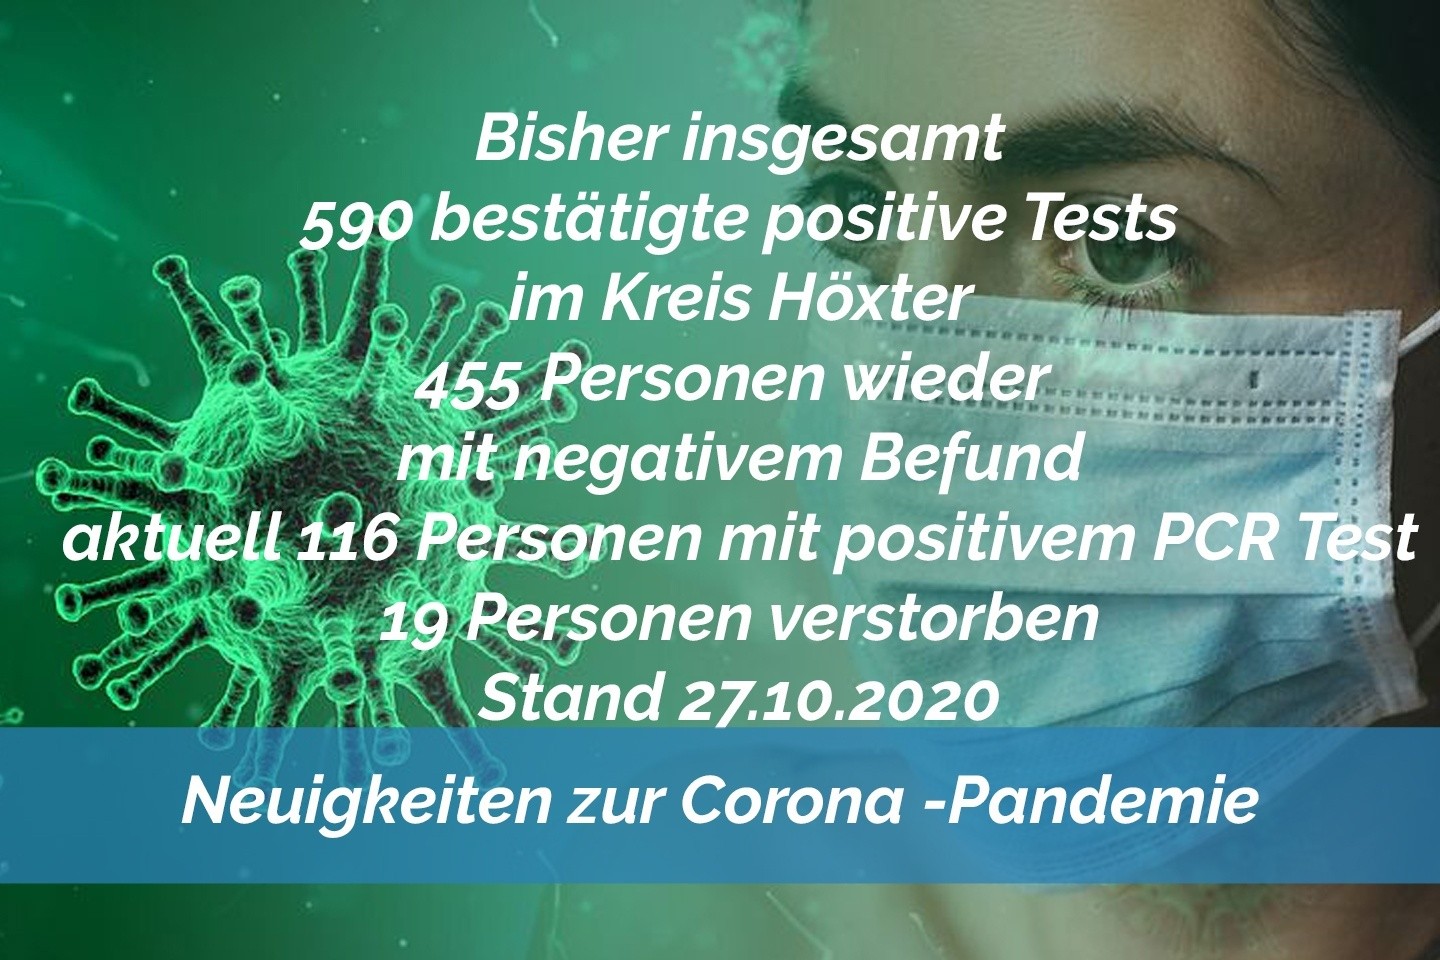 Update 27. Oktober: 2 weitere amtlich positive Tests im Kreis Höxter - Nur leichter Anstieg